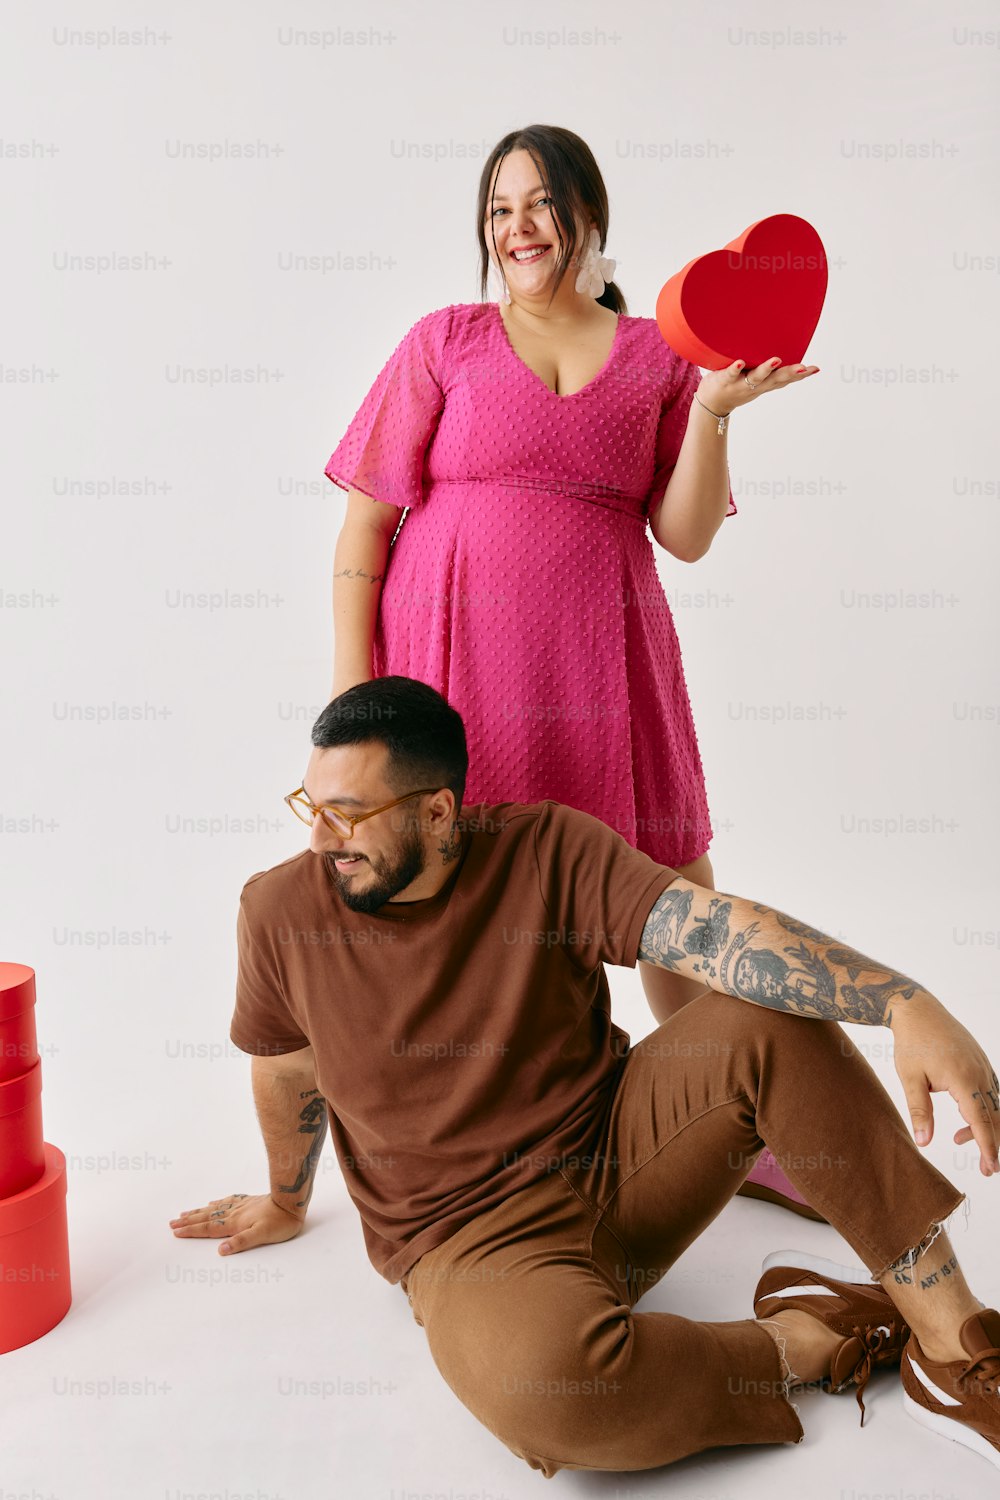 Un hombre sosteniendo un frisbee rojo junto a una mujer